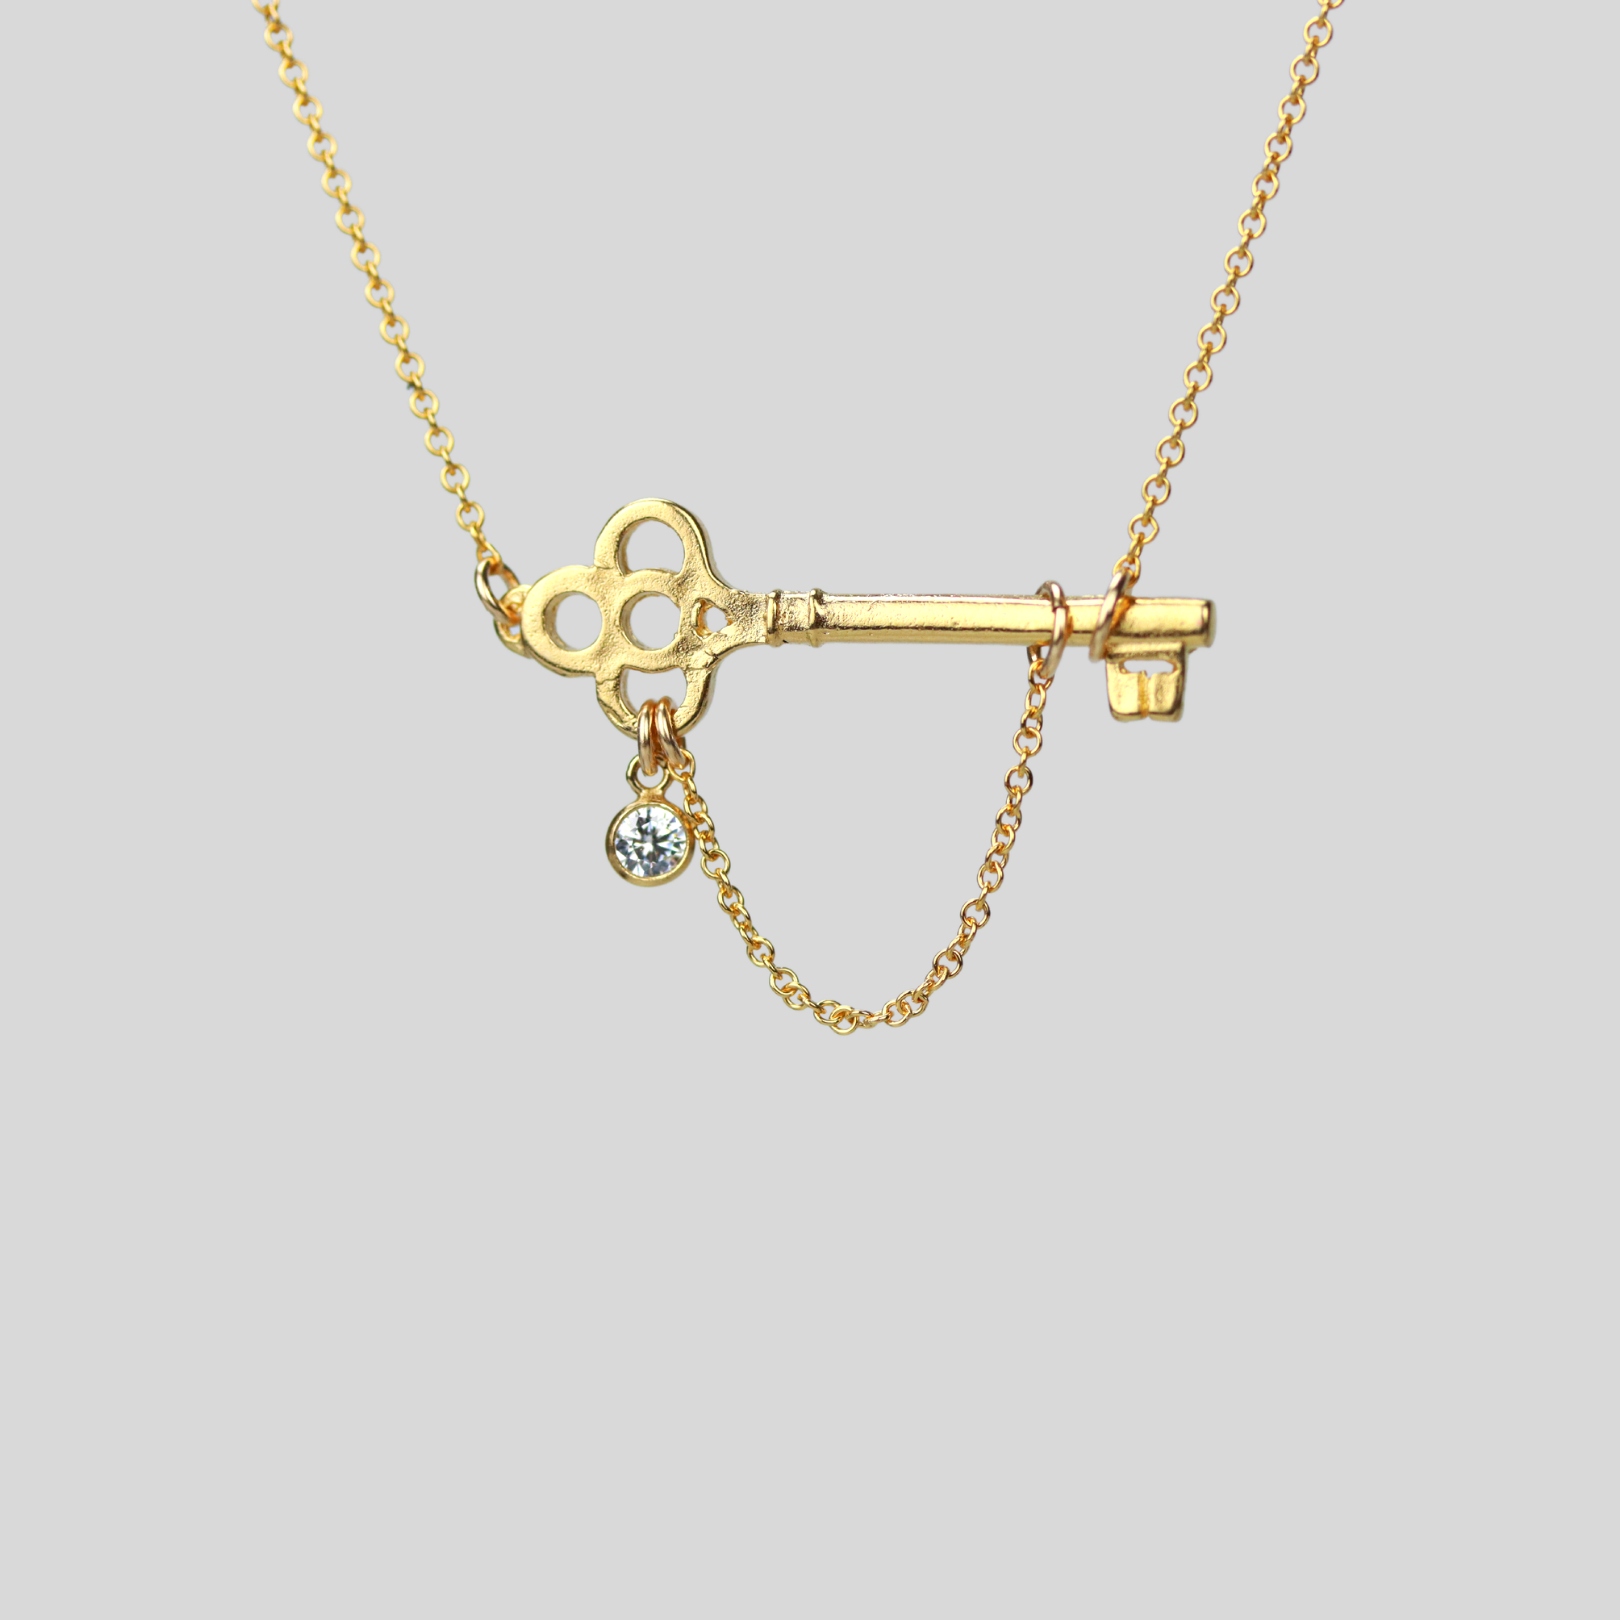 Dainty 14k Gold Filled Key Necklace